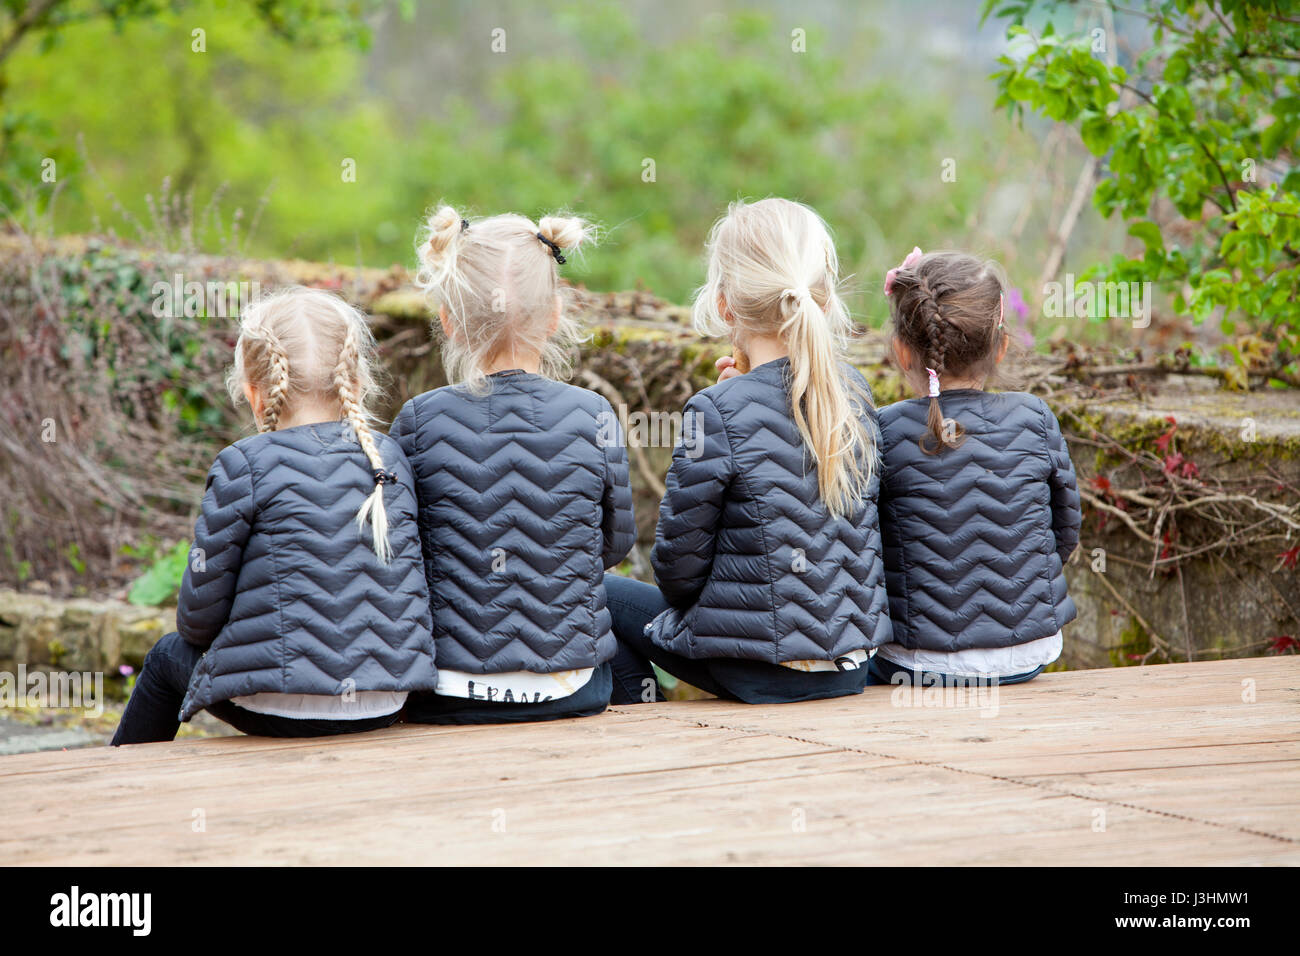 Cuatro niñas con igualdad de la ropa y el pelo-style, Alemania, Europa Foto de stock